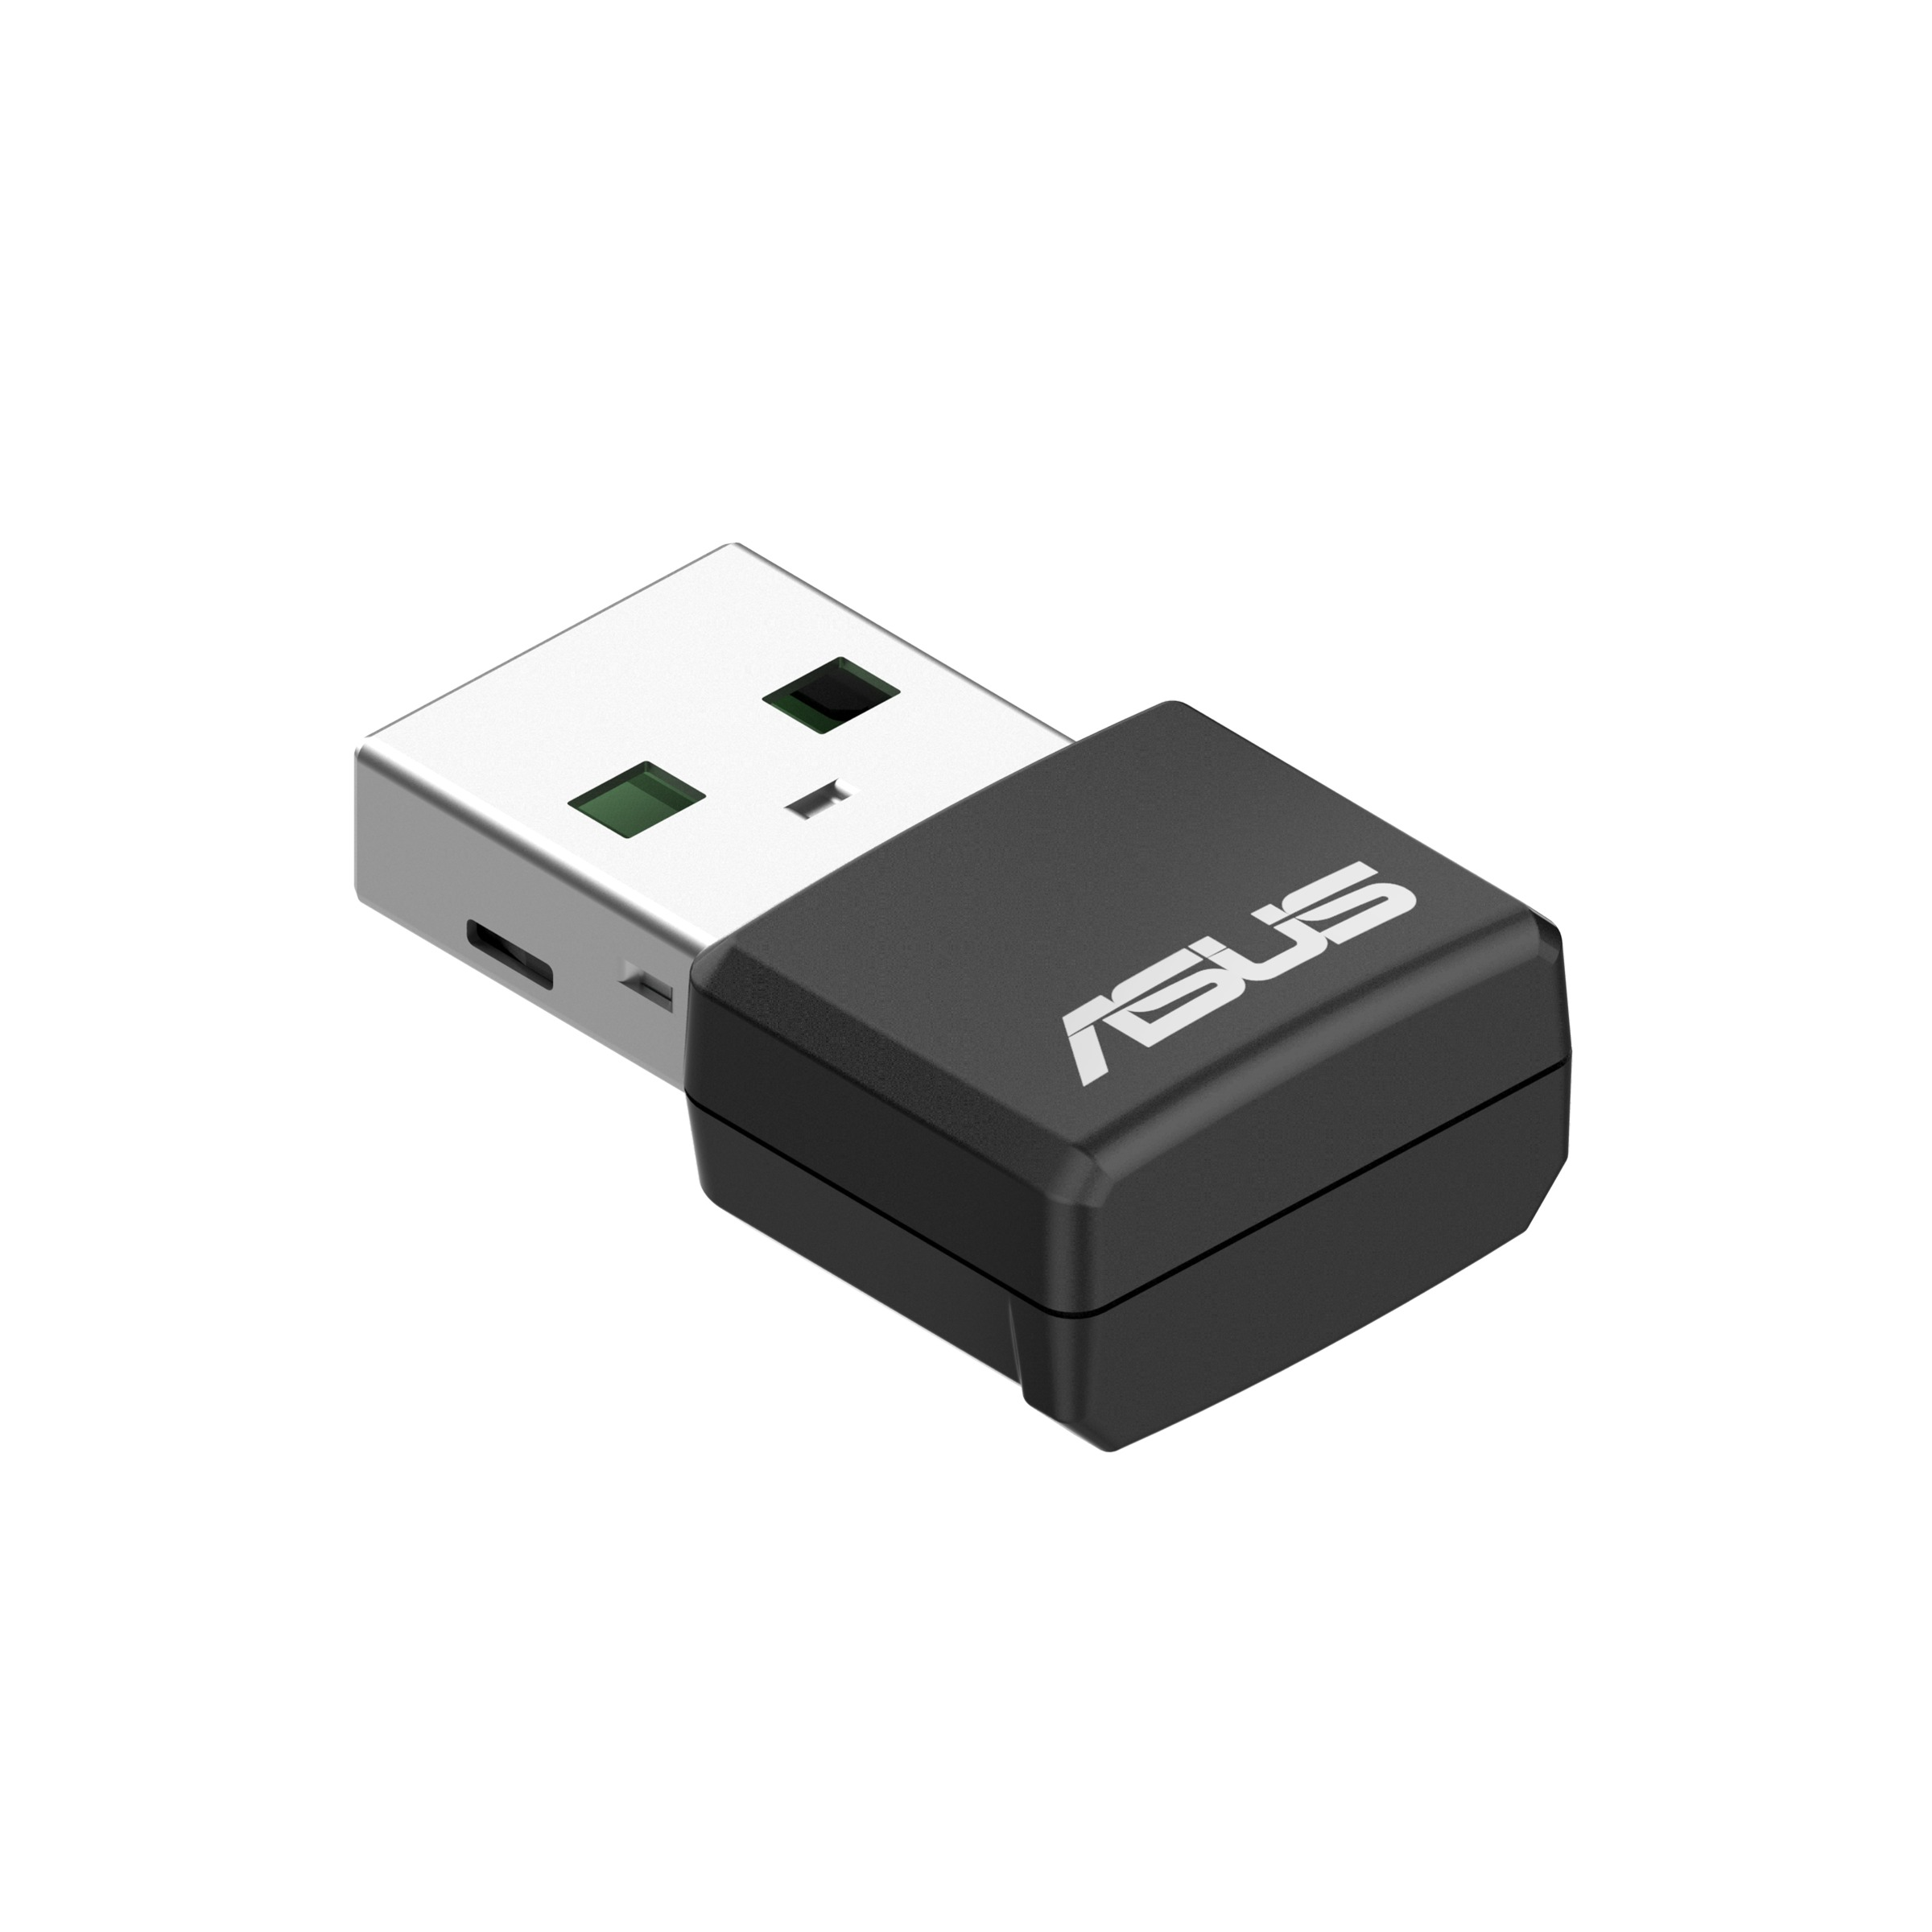 6 ASUS USB AX1800 Adapter WiFi USB-AX55 Nano